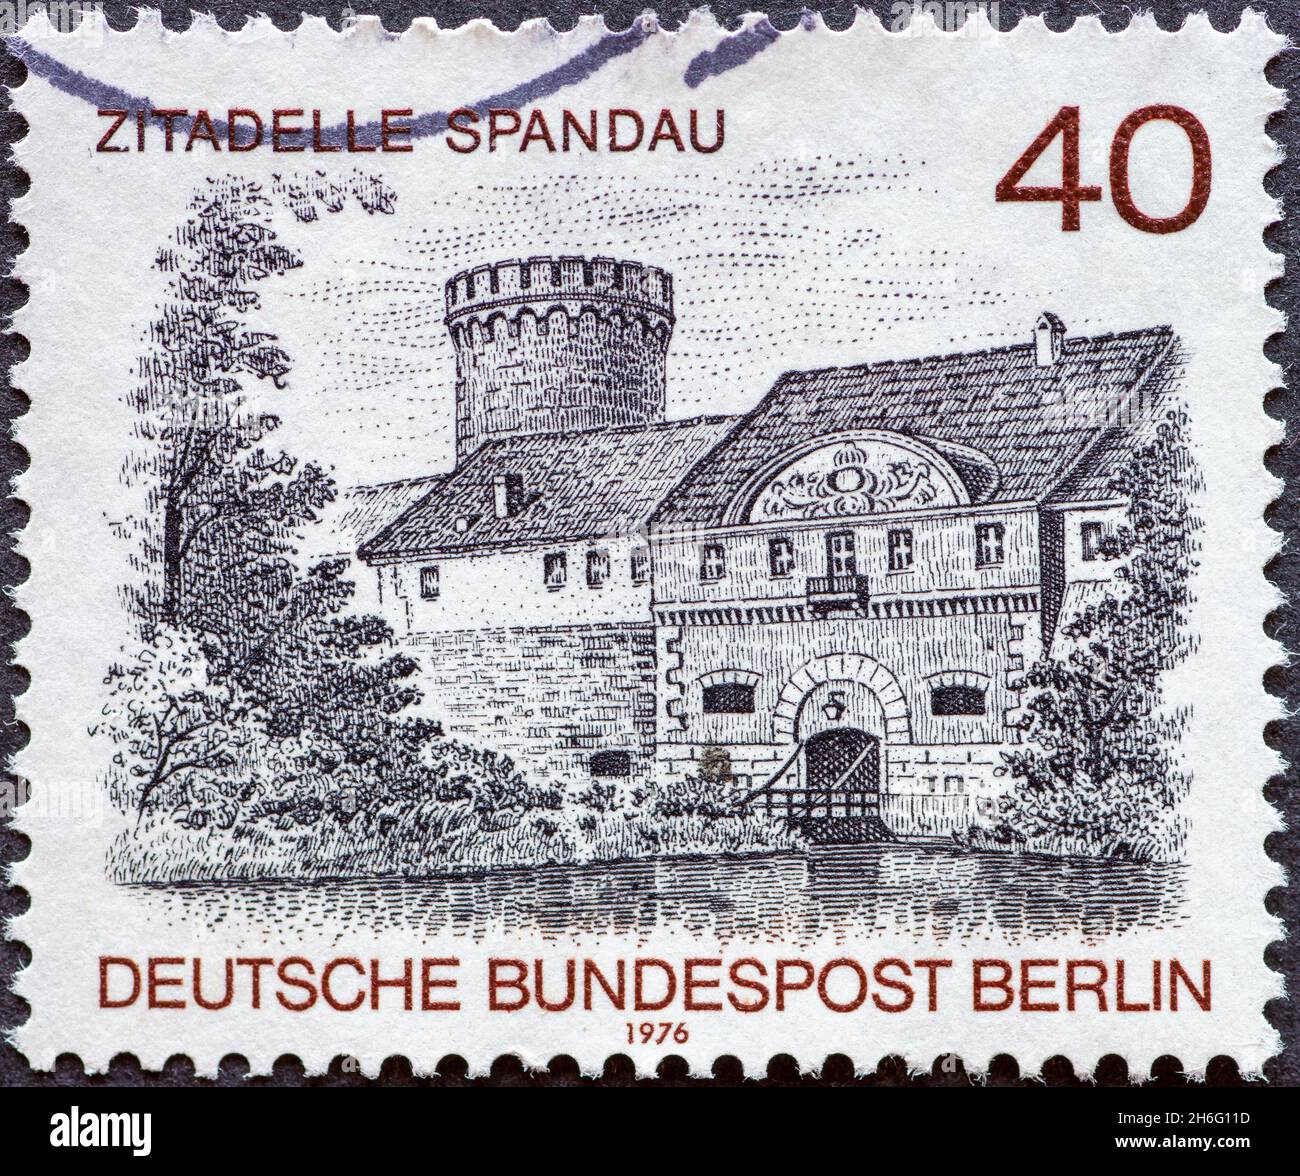 DEUTSCHLAND, Berlin - UM 1976: Eine Briefmarke aus Deutschland, Berlin zeigt eine Berliner Ansicht: Das Zitatell-Gebäude in Spandau Stockfoto